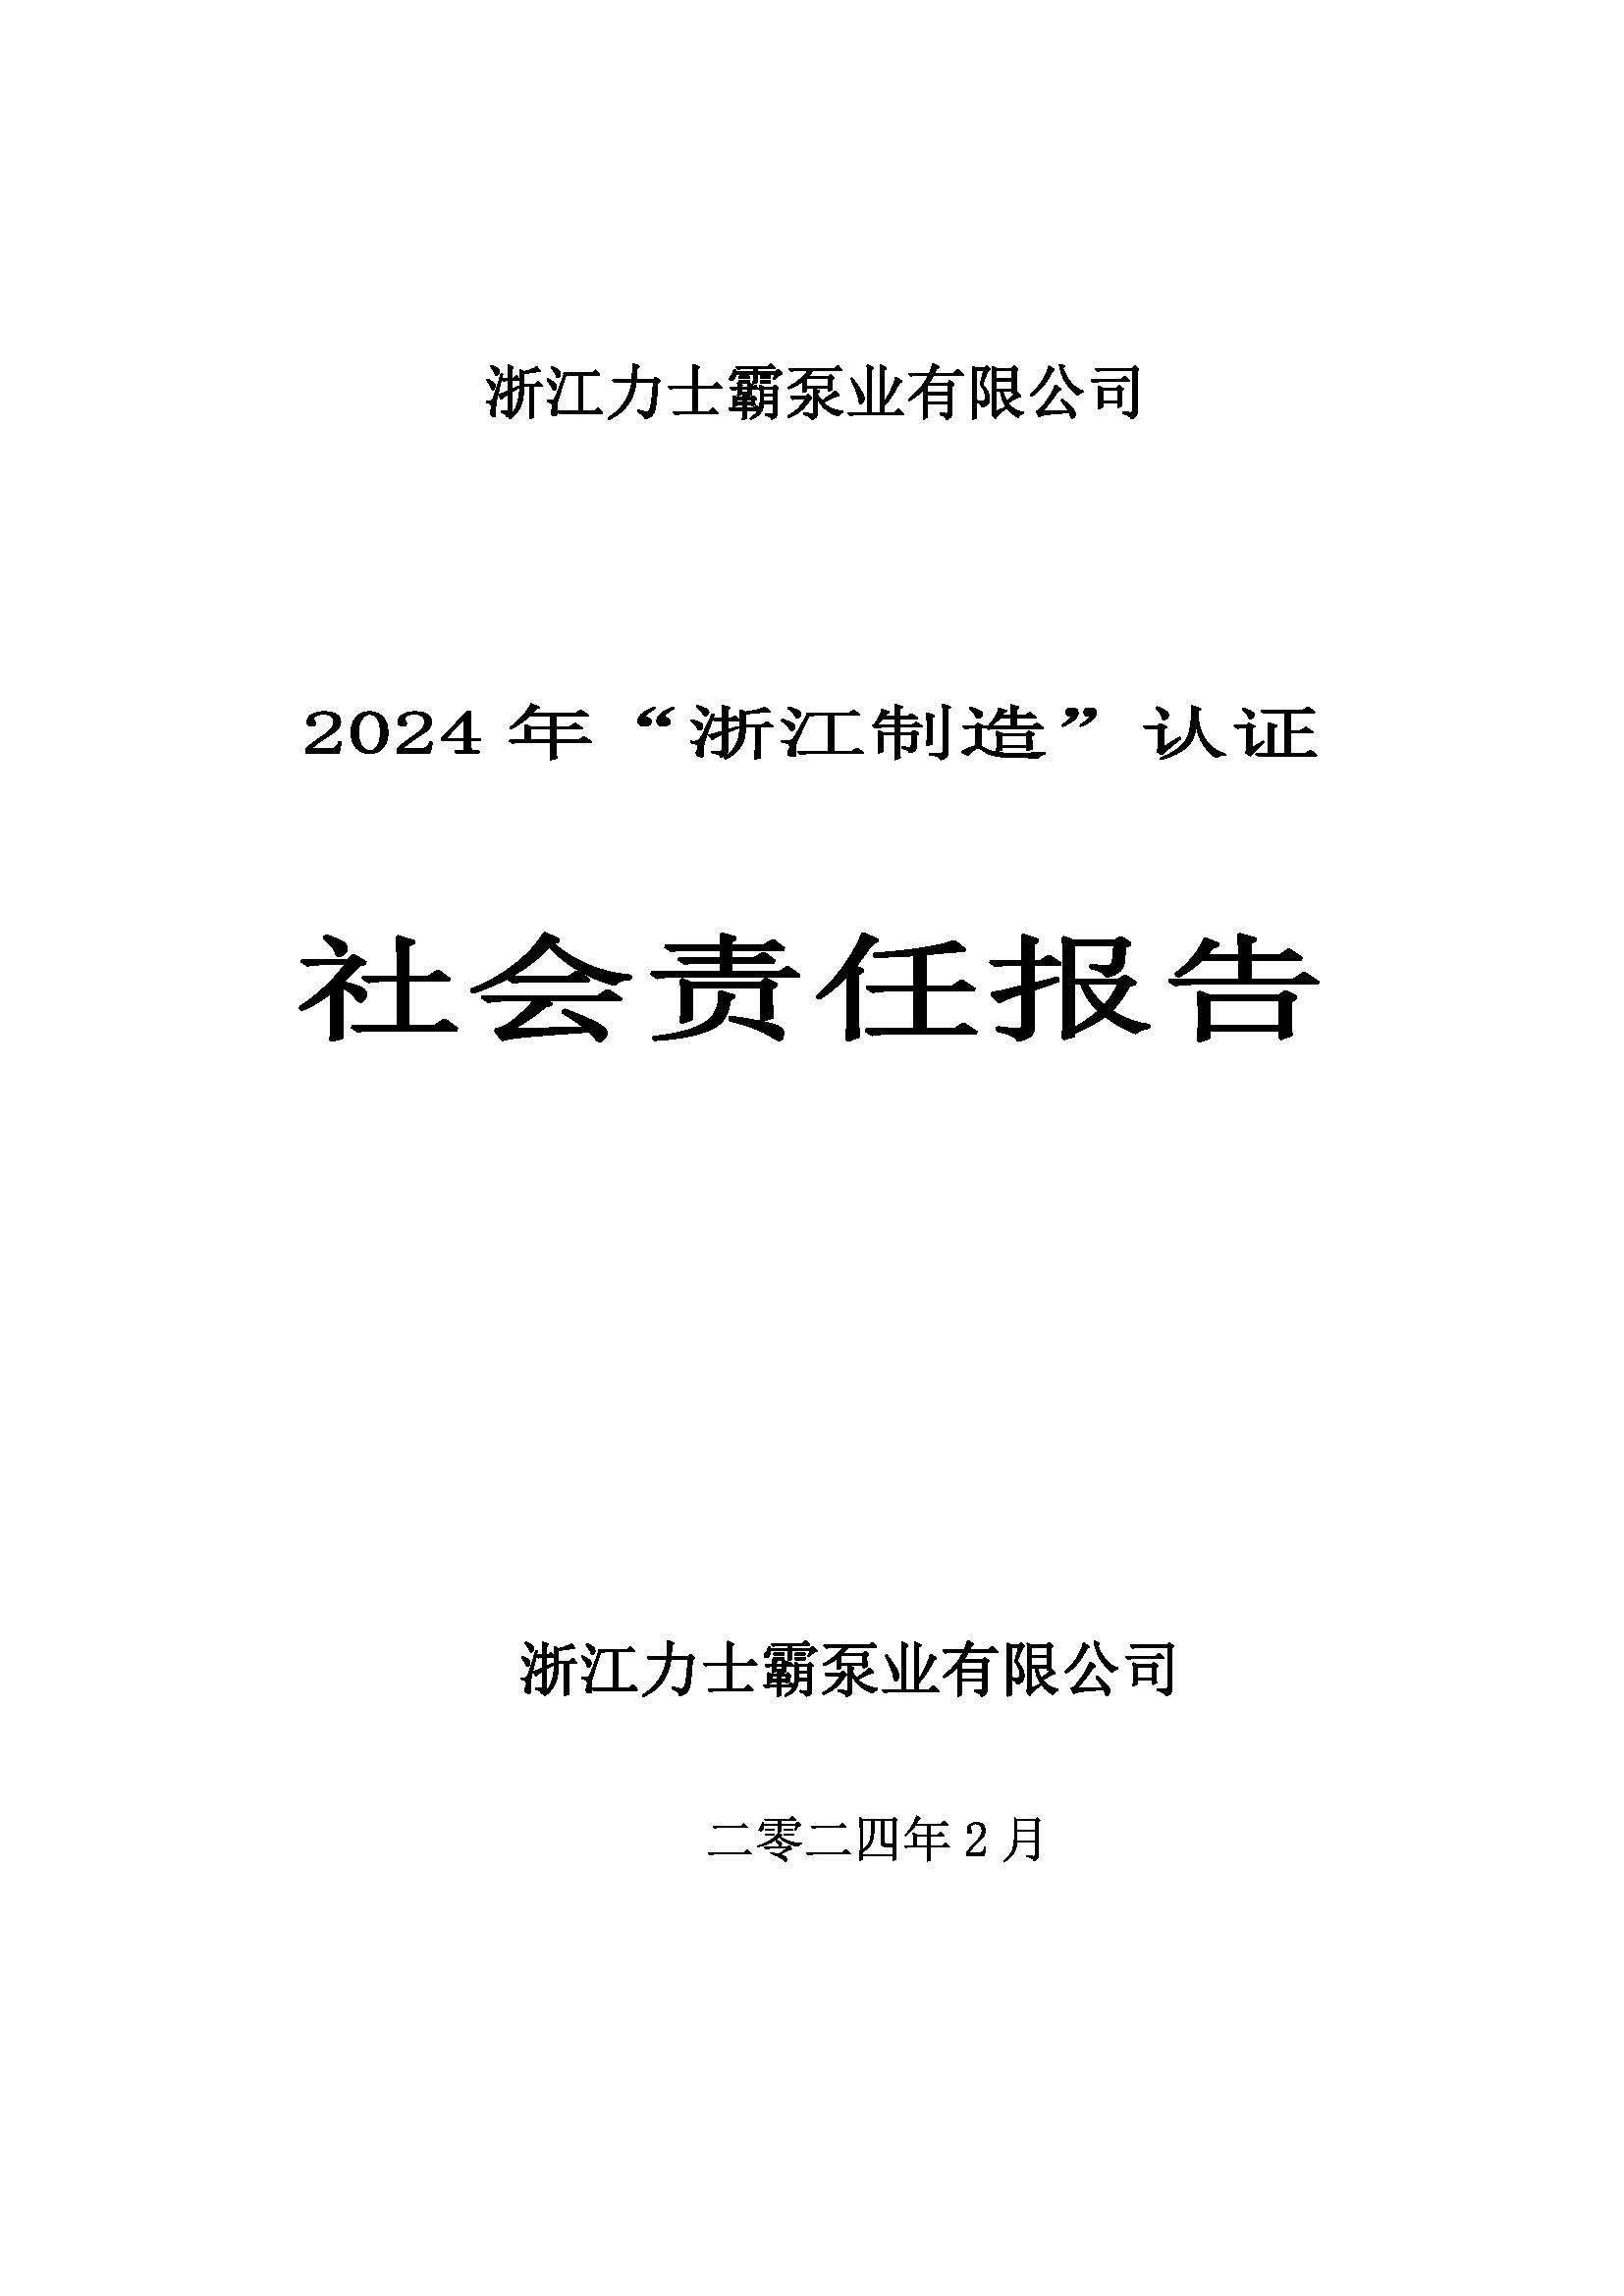 社会责任报告-浙江尊龙凯时泵业有限公司2024年“浙江制造”认证(图1)